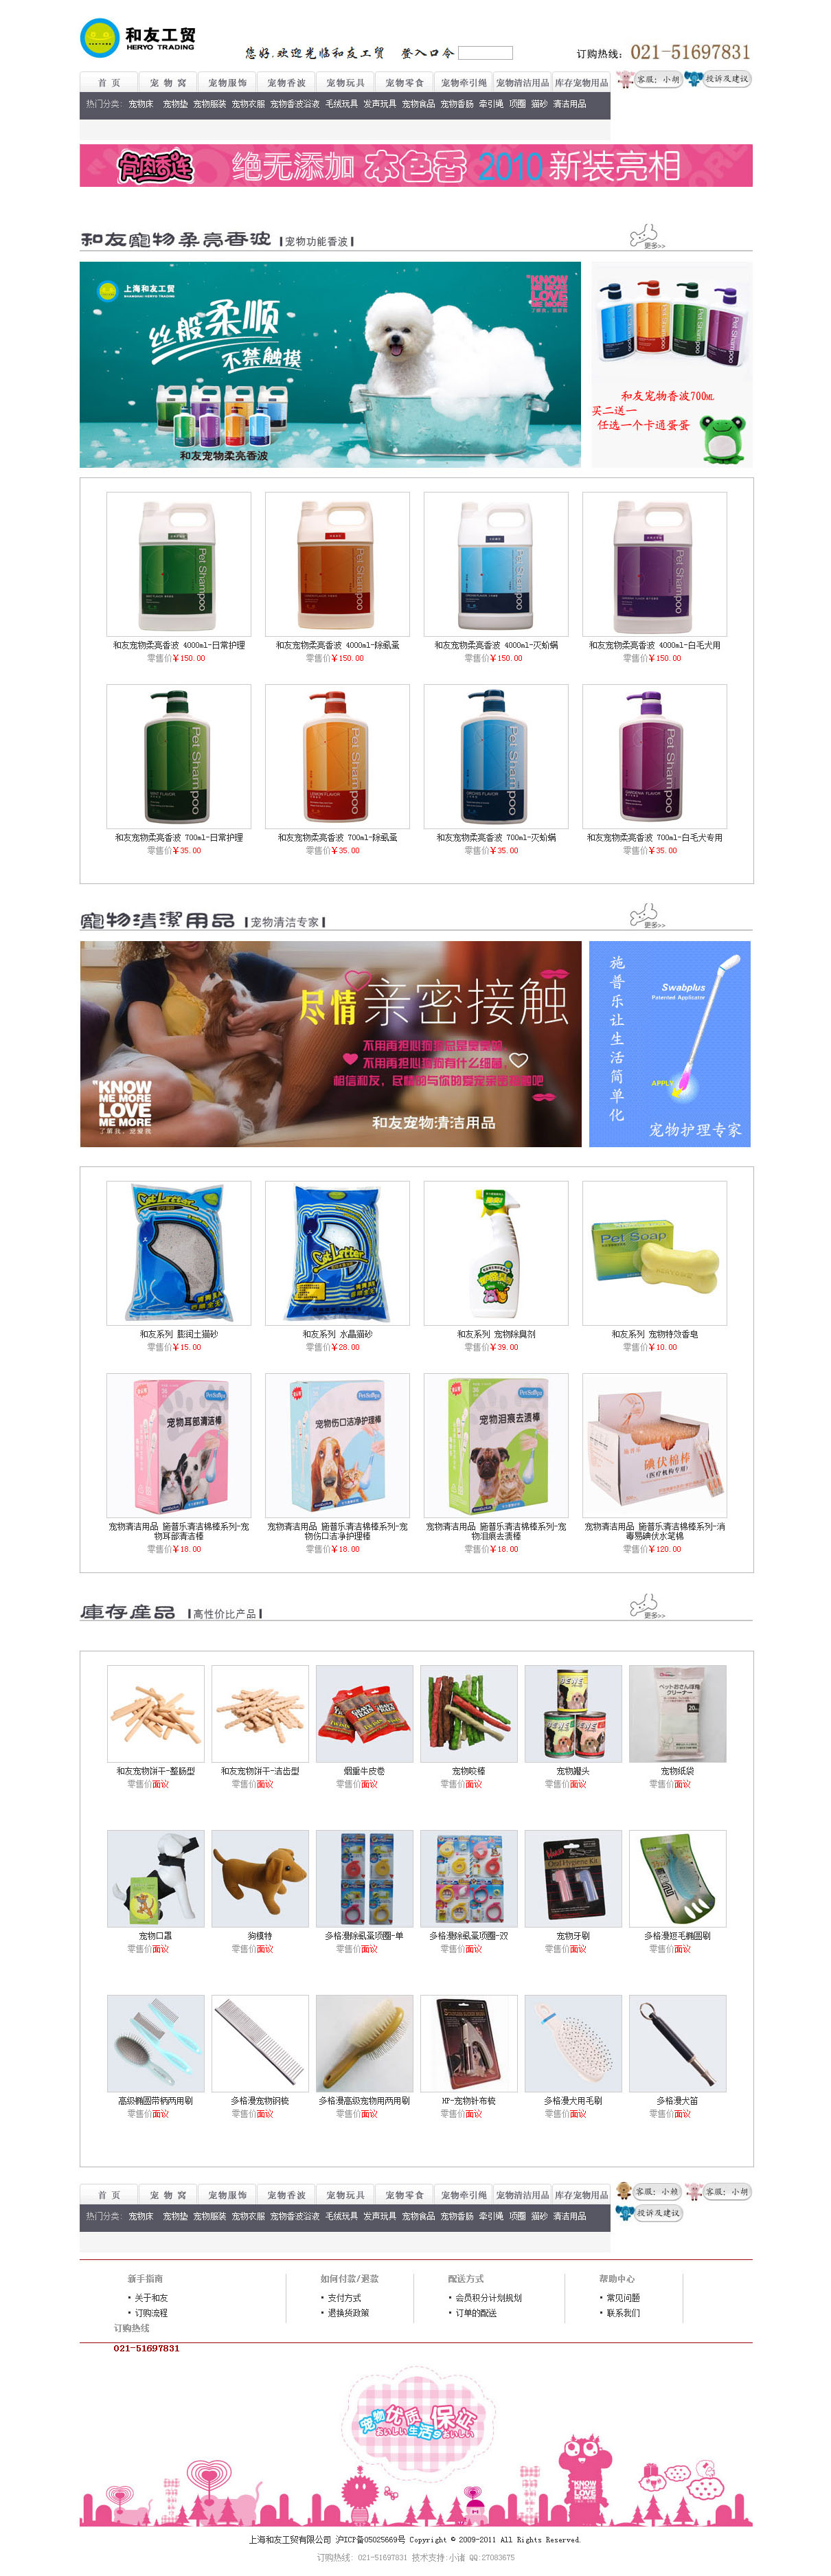 上海和友工贸有限公司门户型网站建设